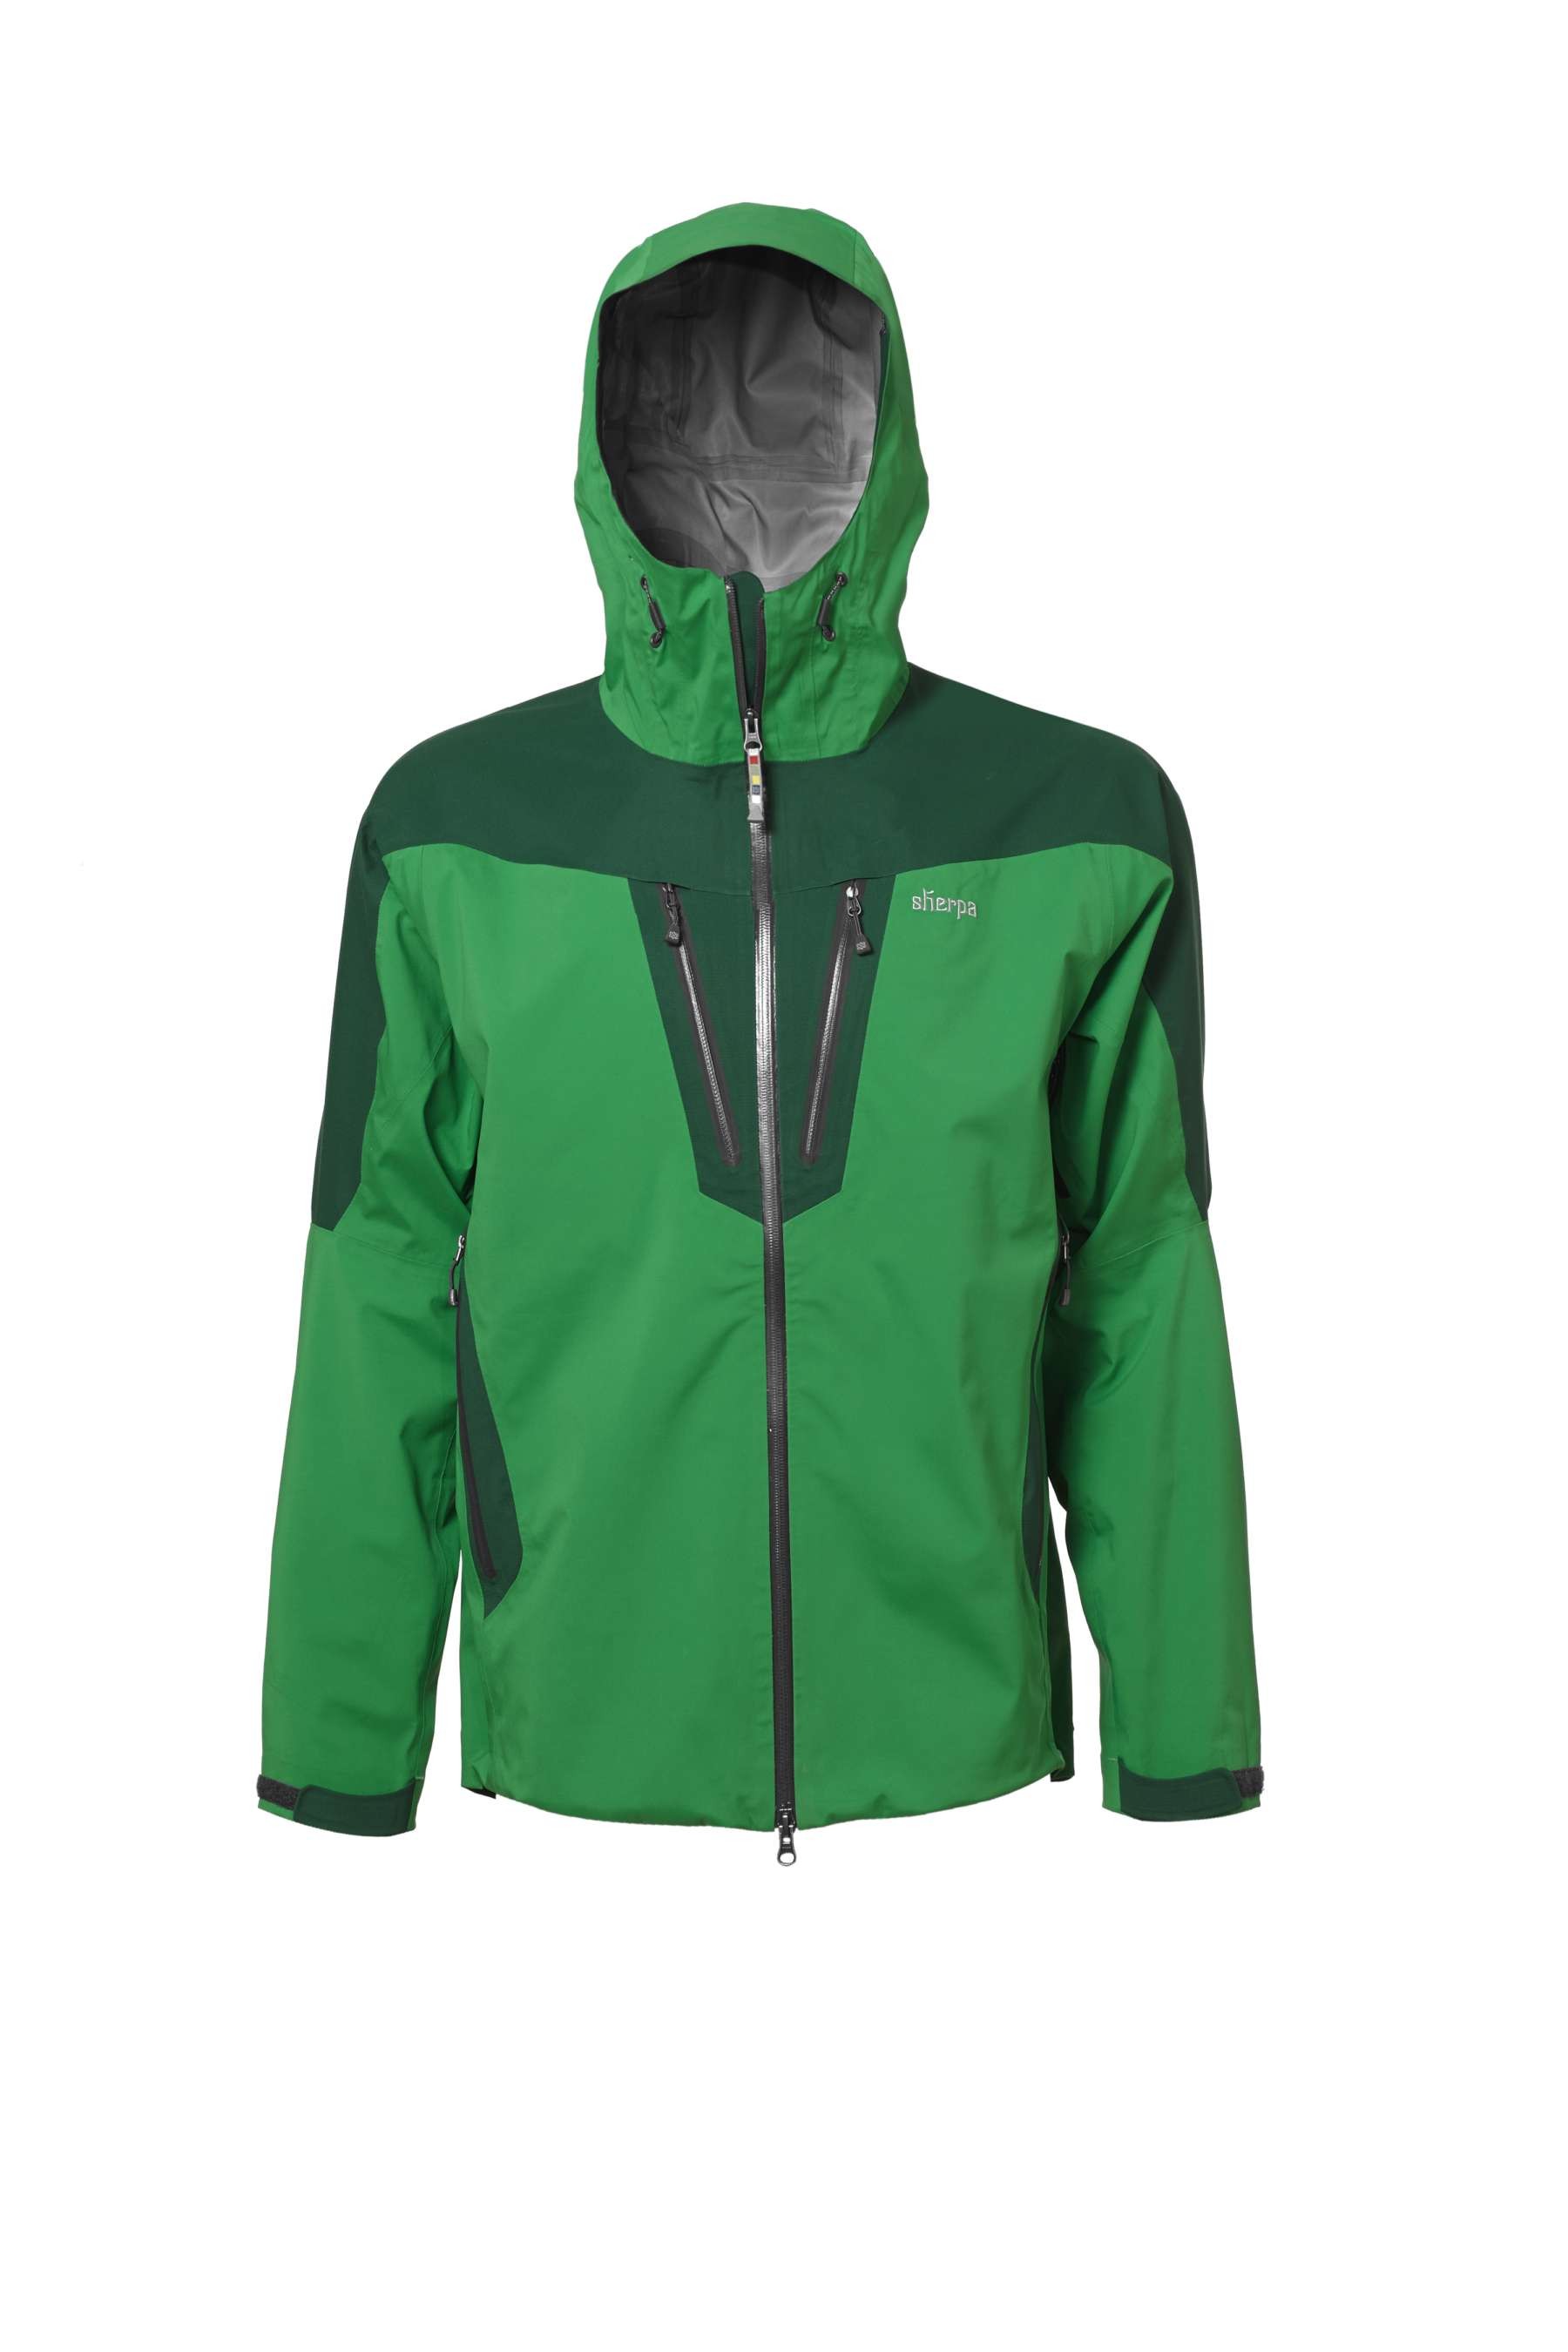 sherpa lithang waterproof jacket